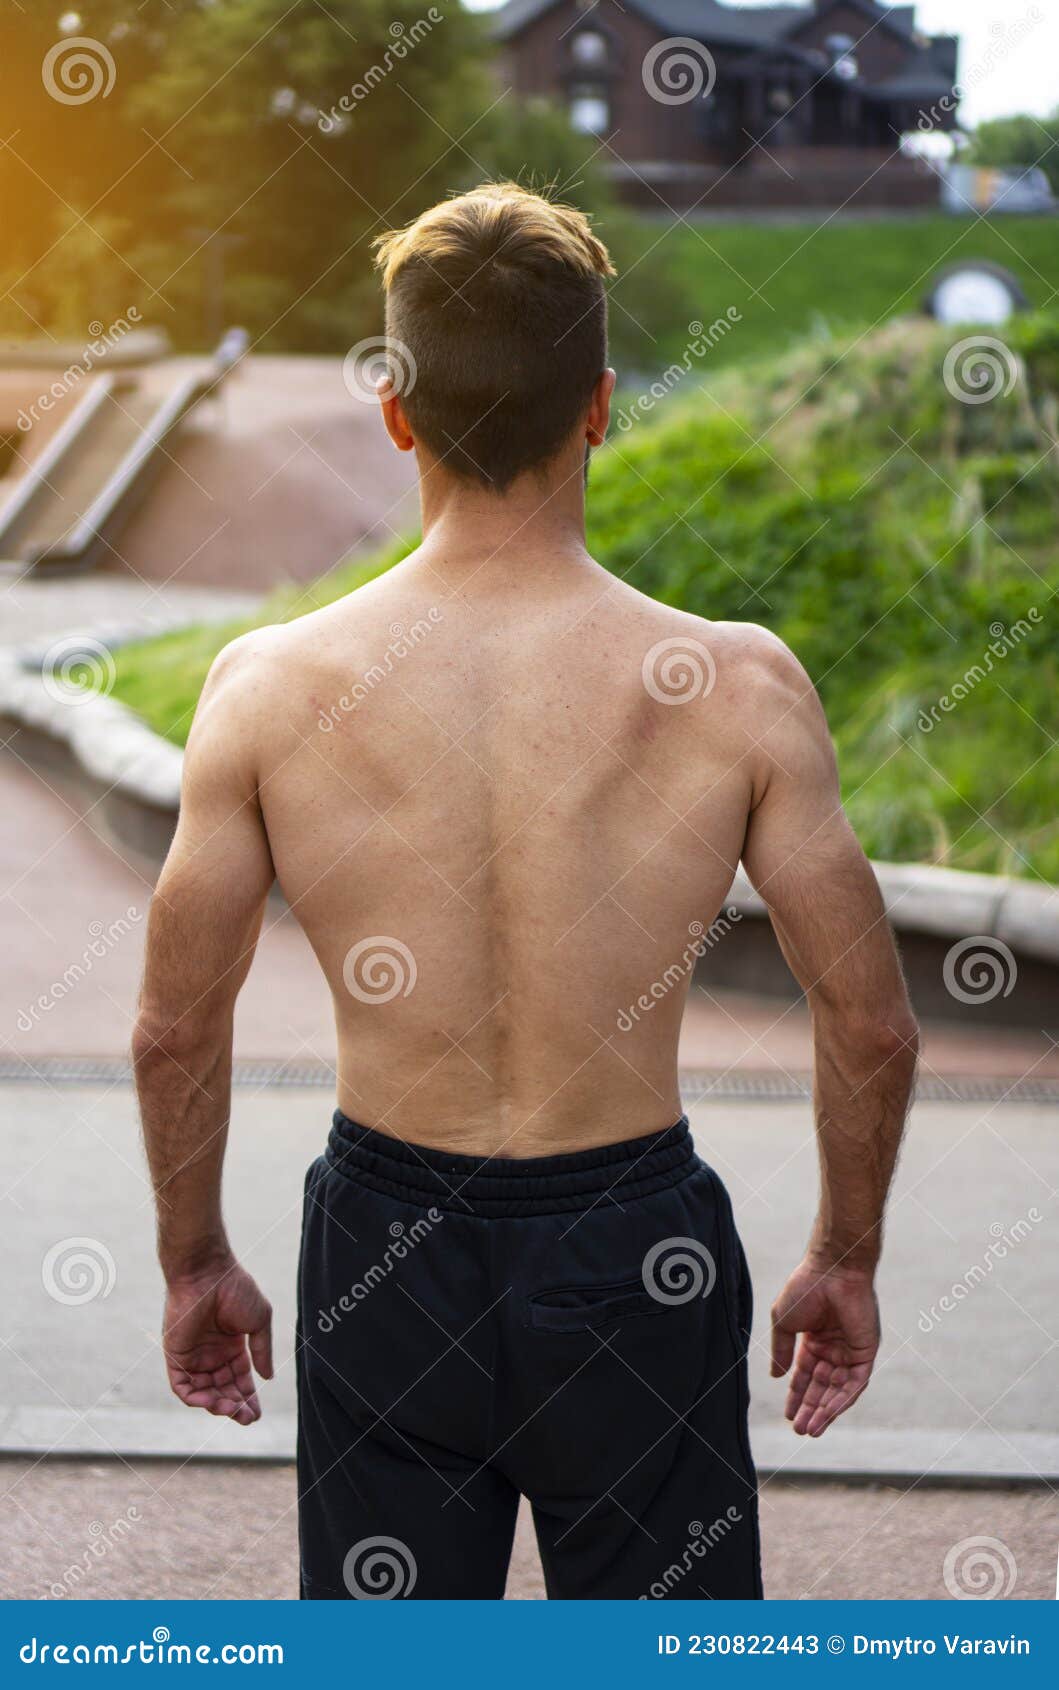 健美男后背. 裸体肌肉男 库存照片. 图片 包括有 体操, 冷静, 方式, 健康, 逗人喜爱, 残酷地 - 222251356